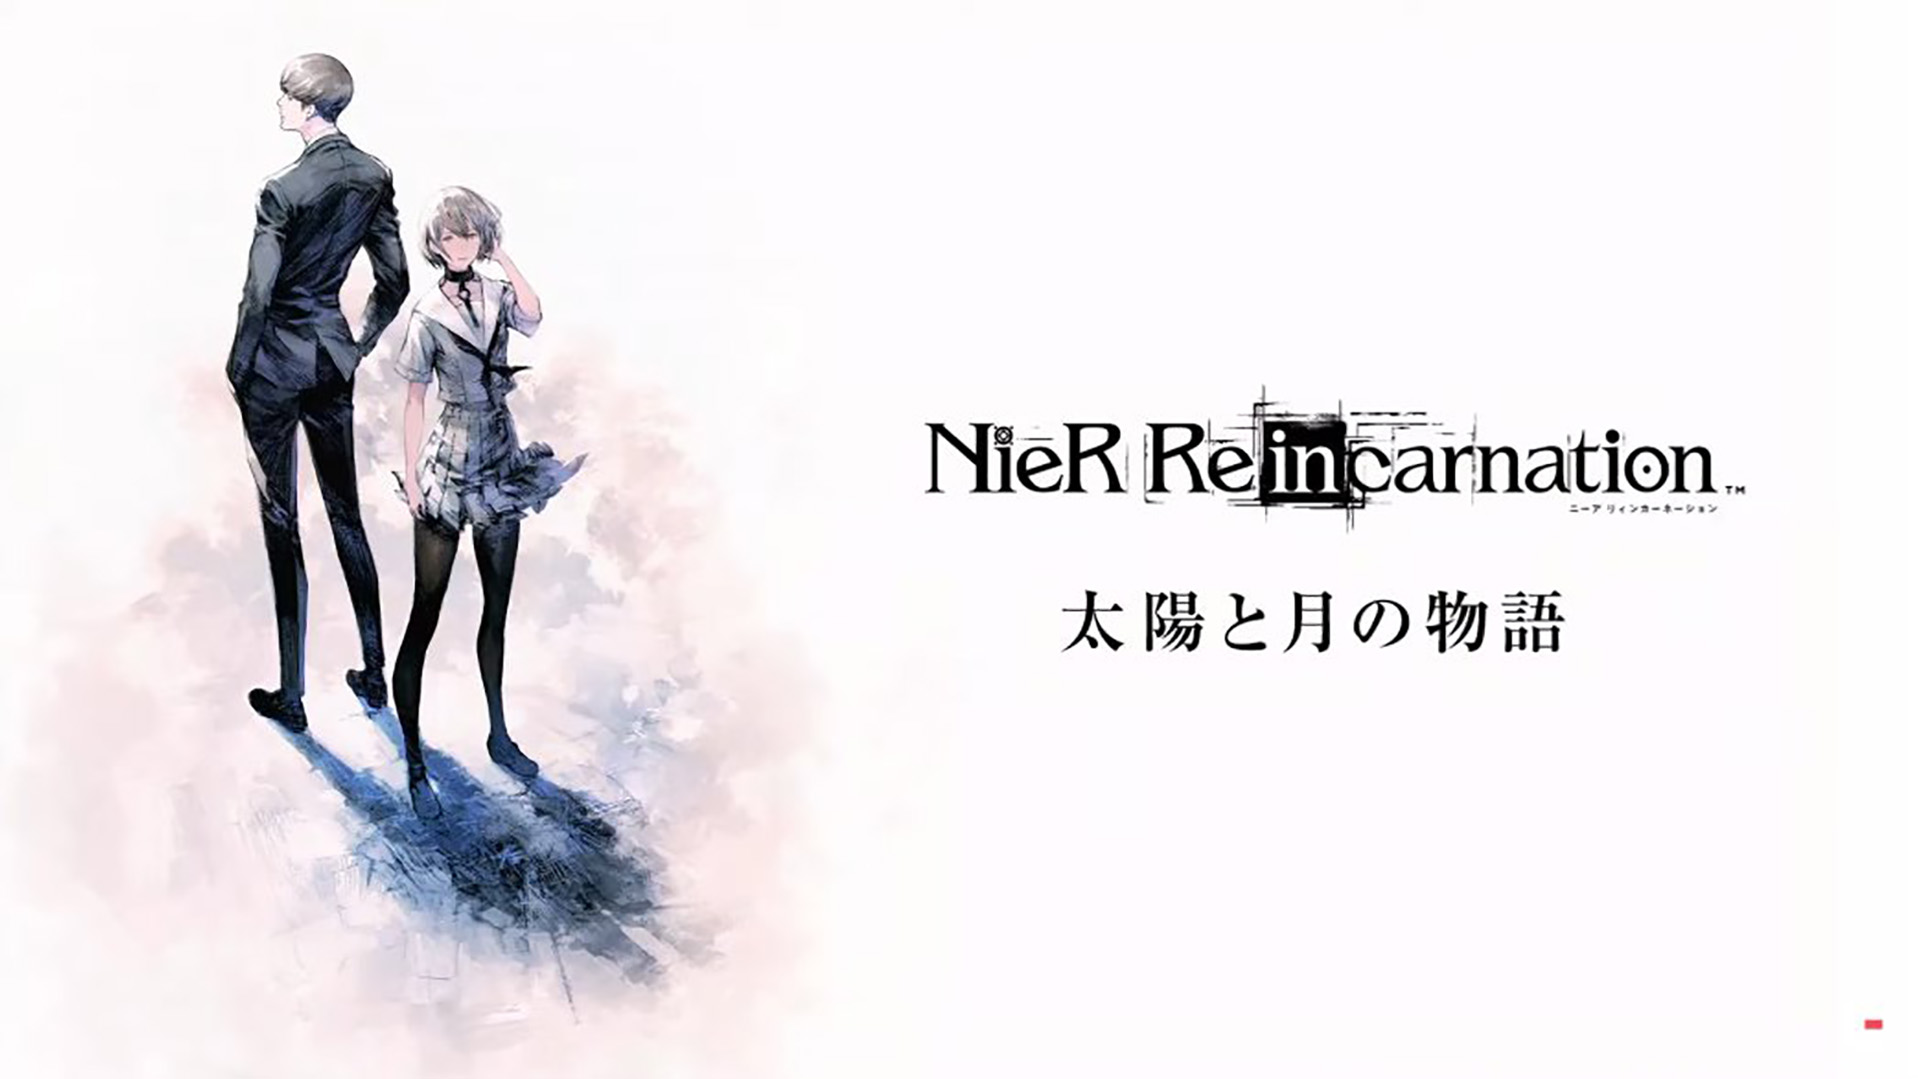 Square Enix เผยข้อมูลเนื้อเรื่องตอนที่ 2 ของ NieR Re[in]carnation